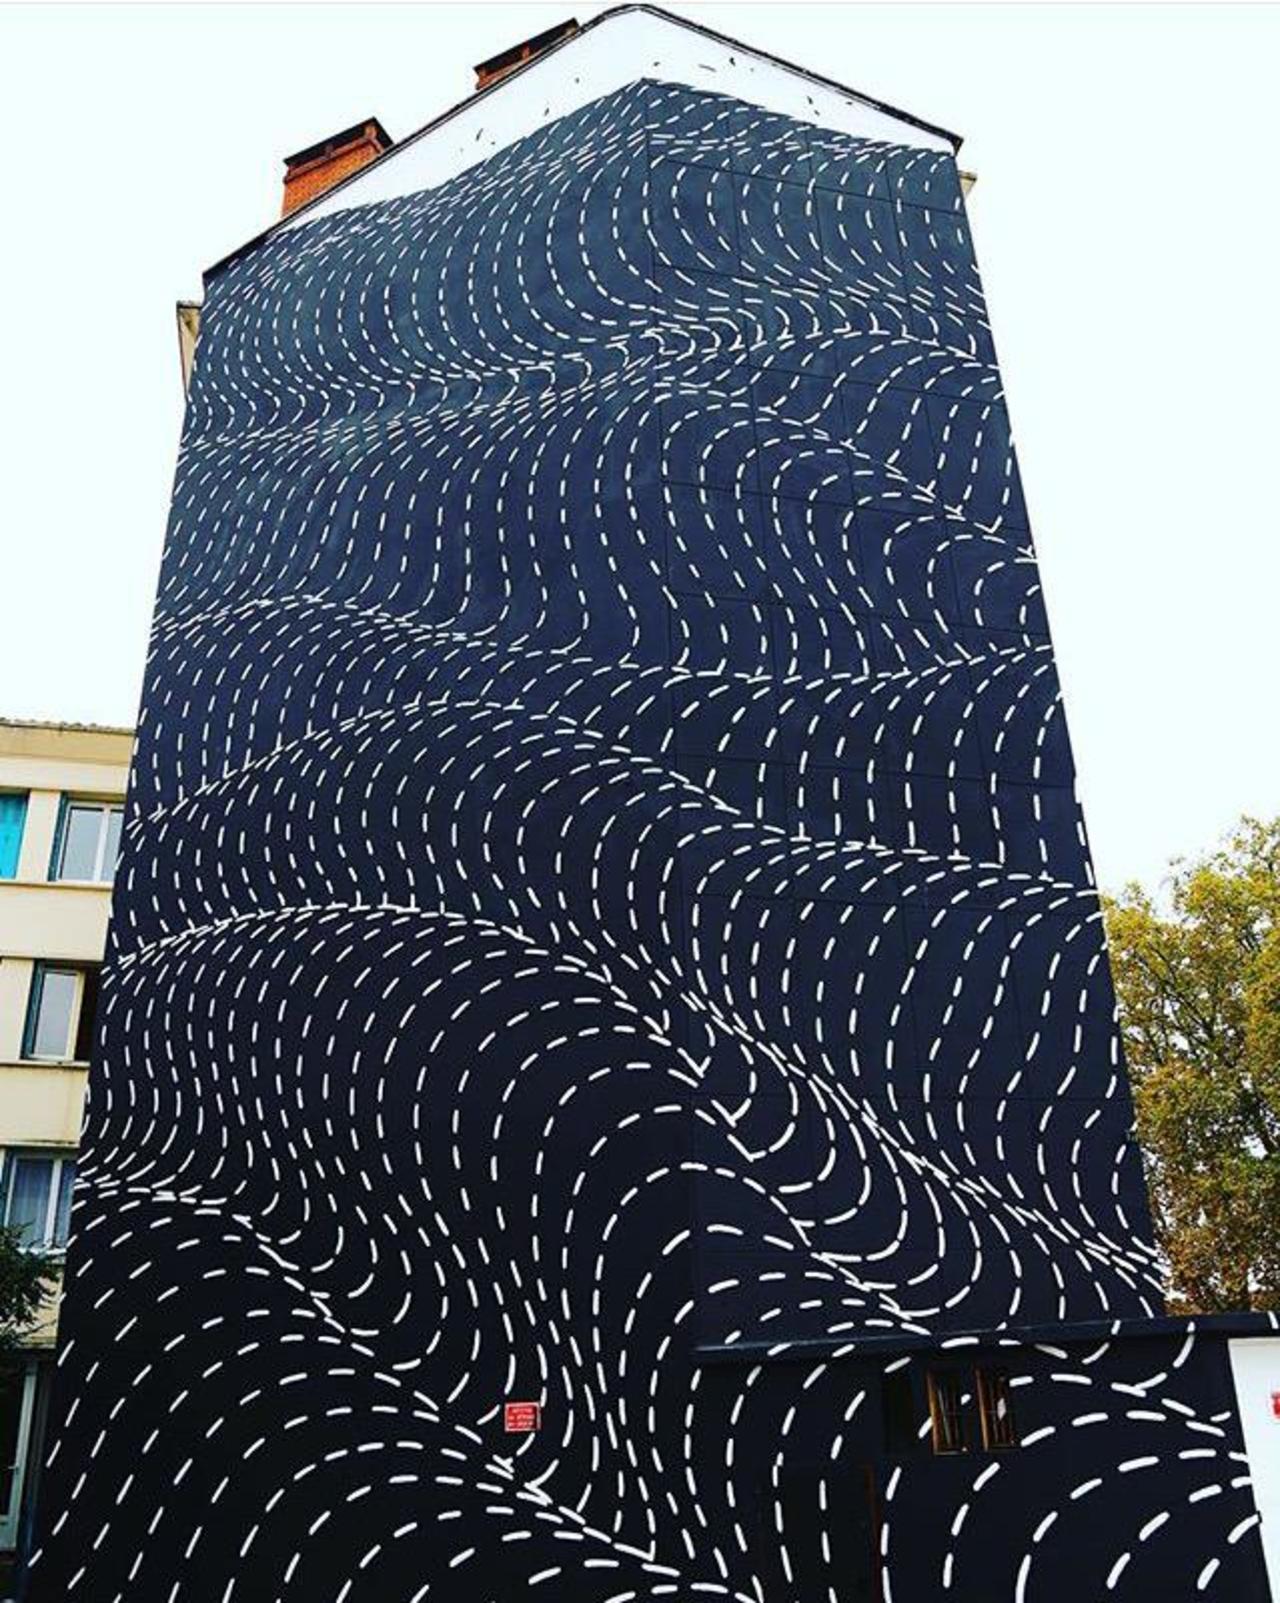 New Street Art by Brendan Monroe's for WOPS ! Festival in Toulouse, France. 

#art #graffiti #mural #streetart https://t.co/CjU8PlLgmv